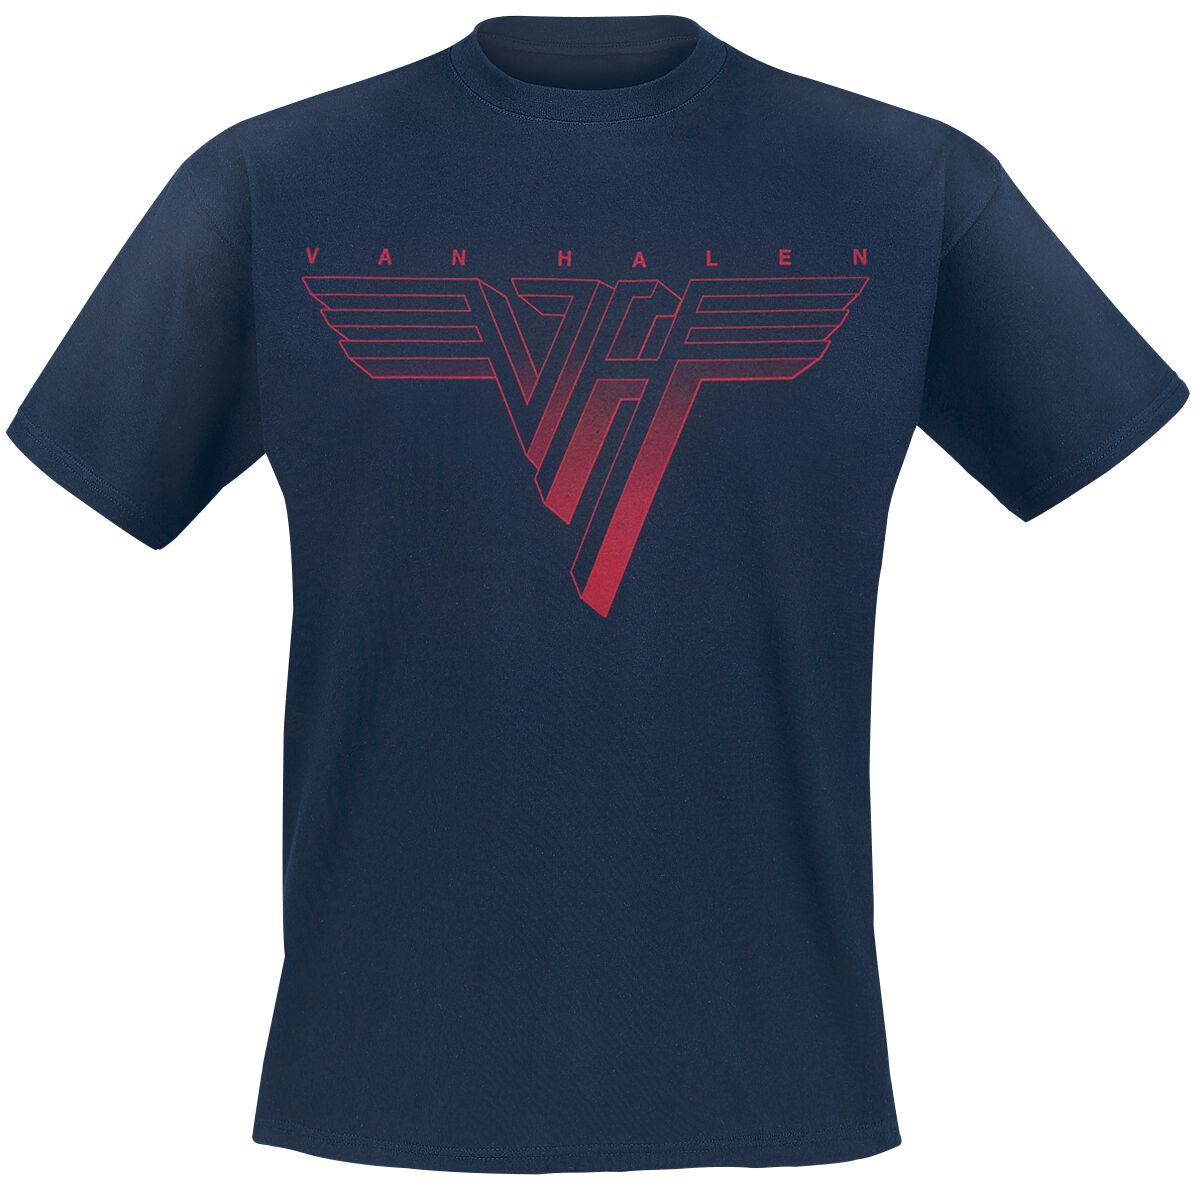 Van Halen Classic Red Logo T-Shirt navy in 3XL